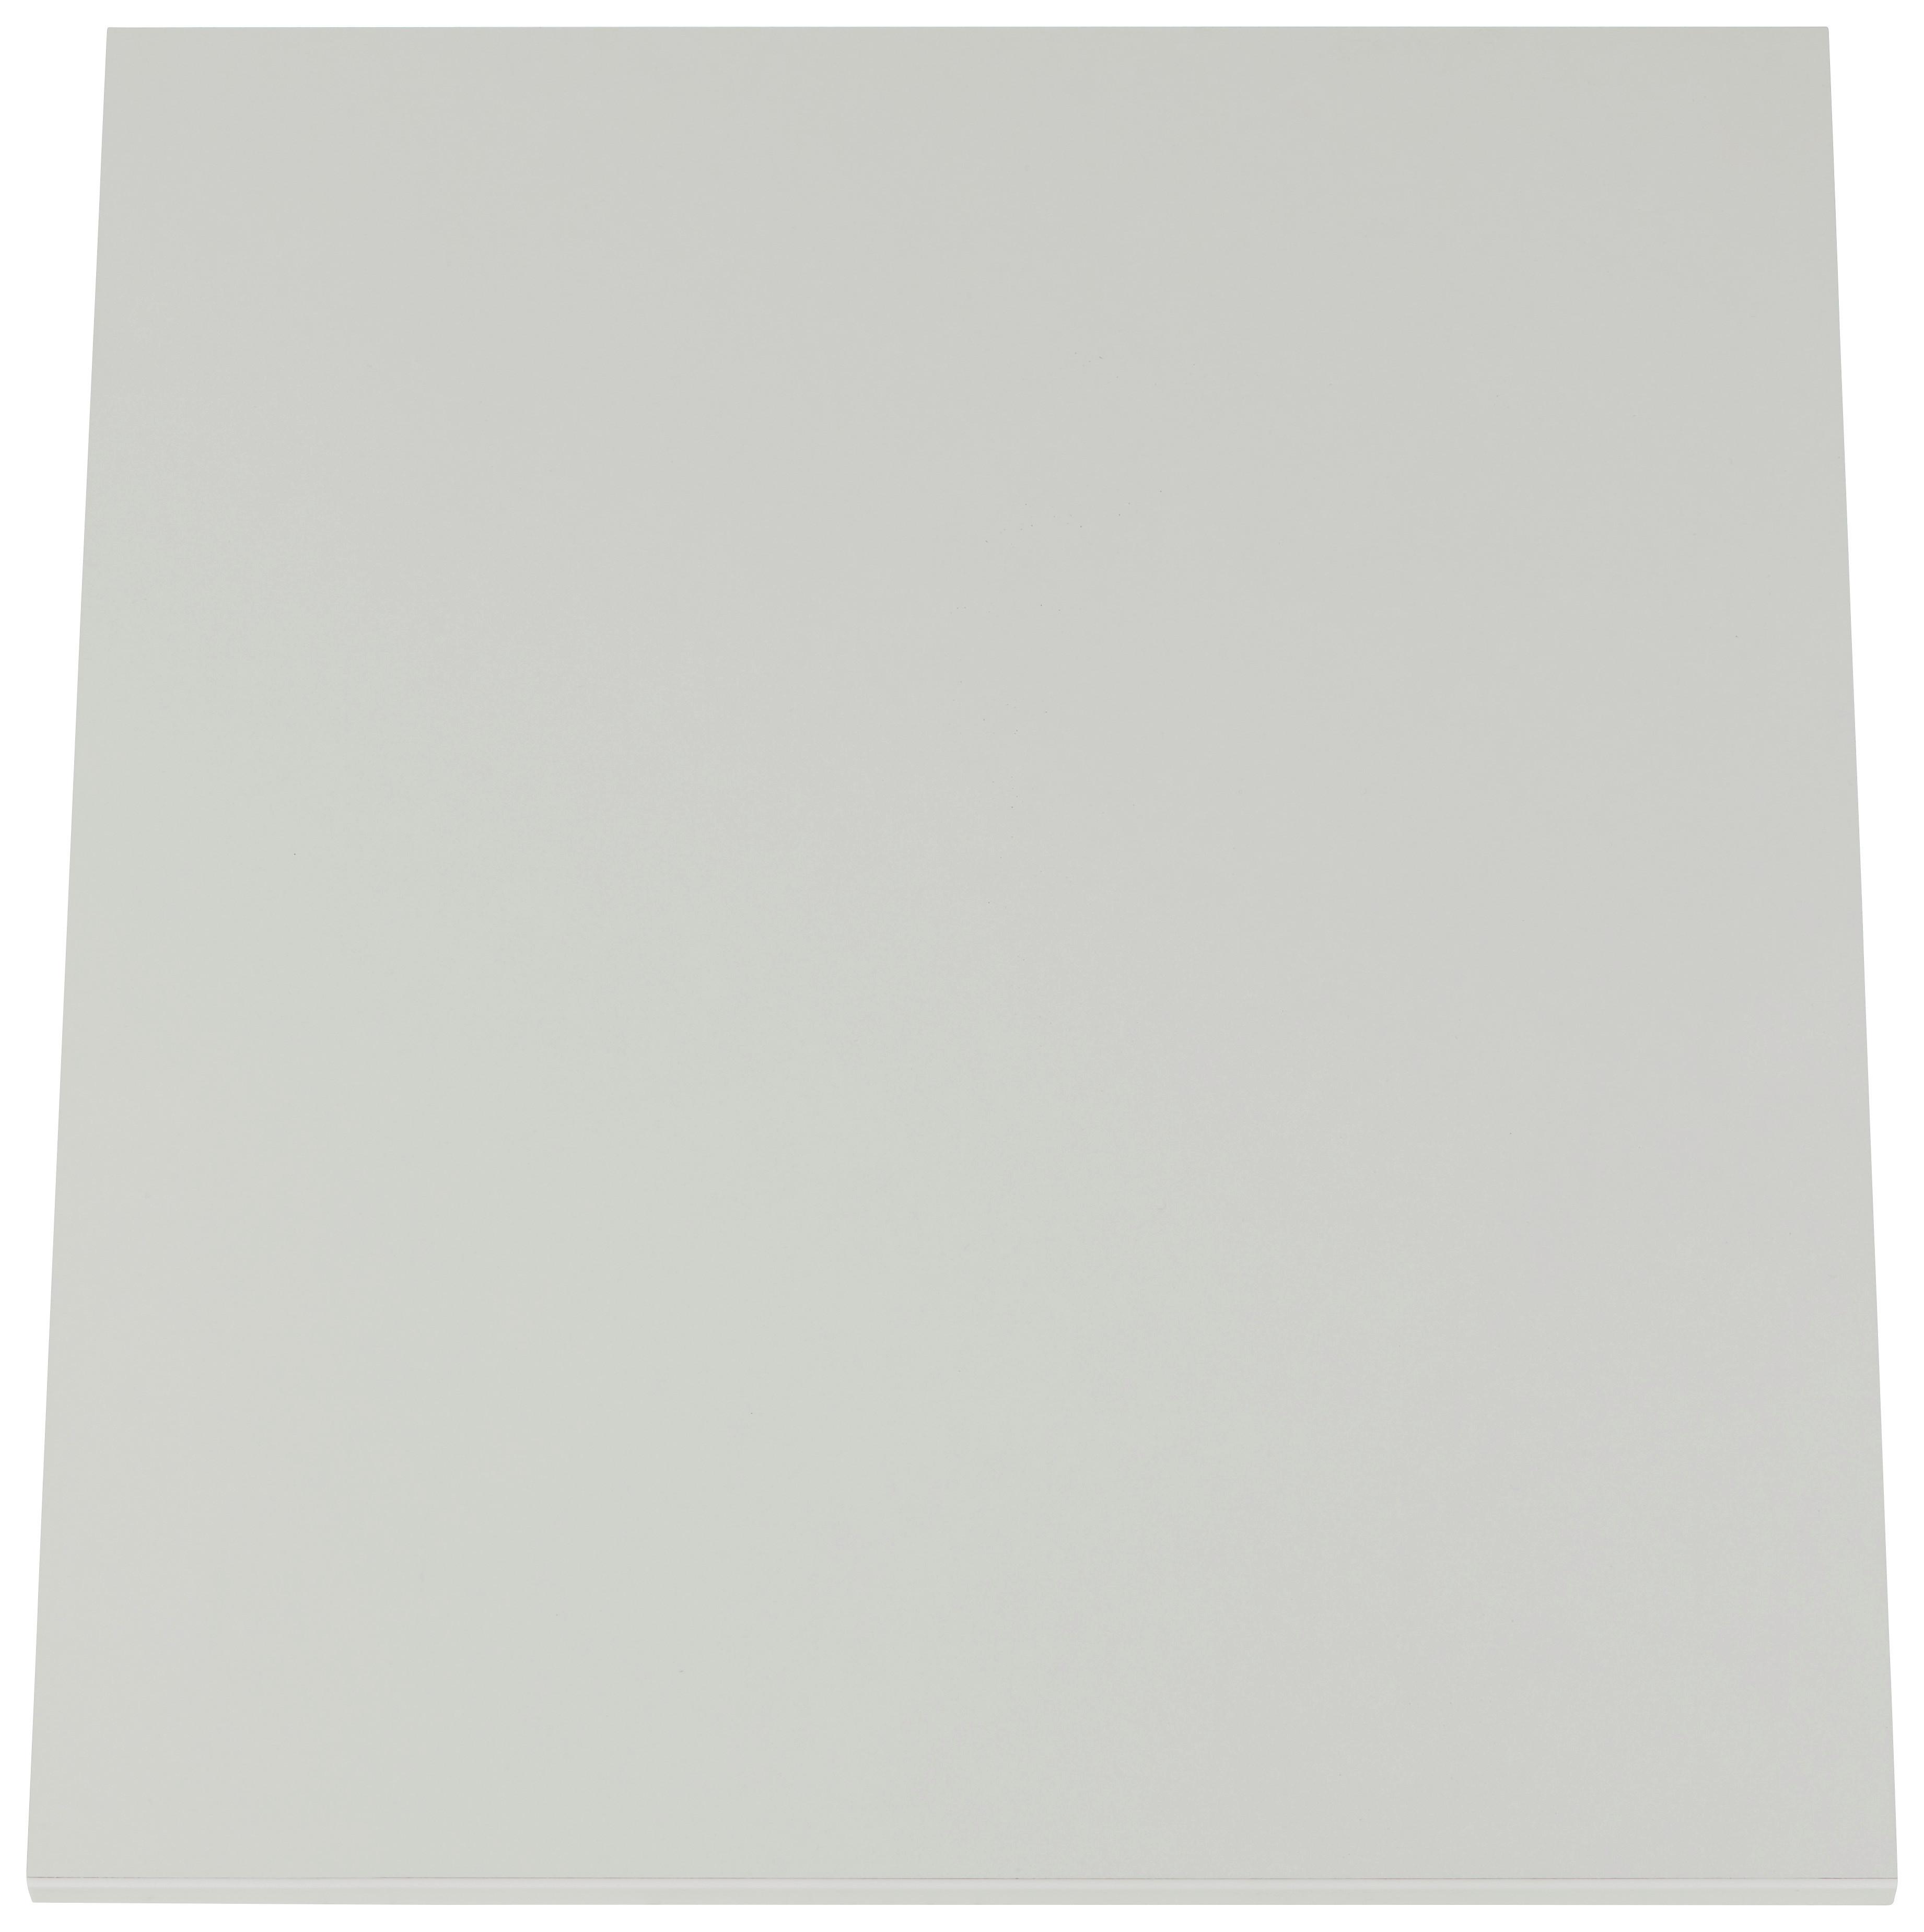 Einlegebodenset in Weiß - Weiß, ROMANTIK / LANDHAUS, Holzwerkstoff (48/2/56cm) - Based